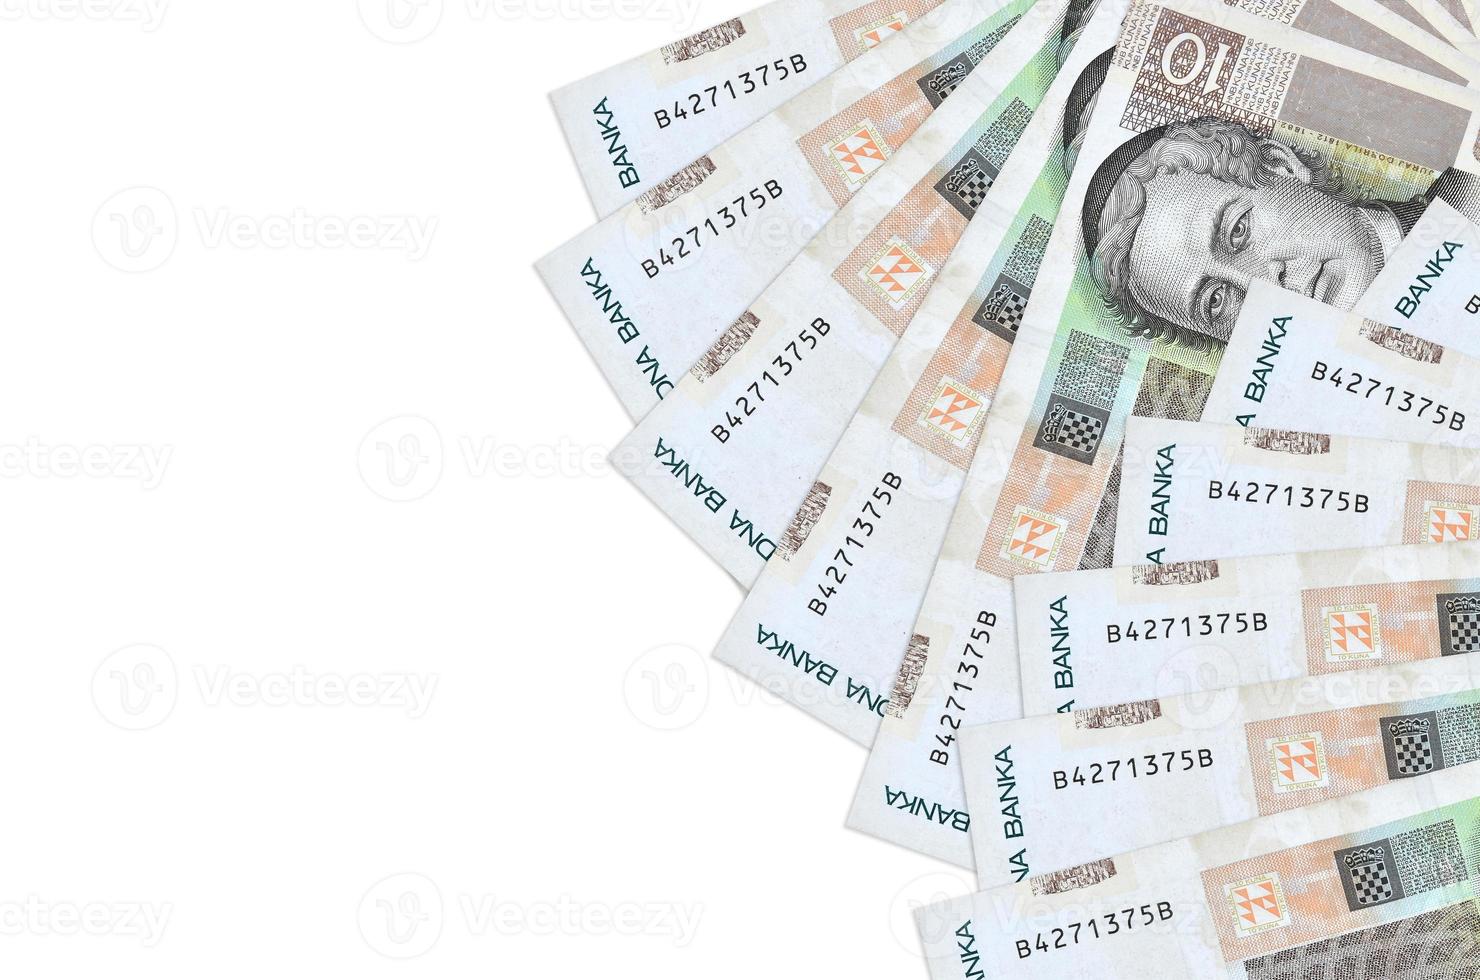 10 billetes de kunas croatas se encuentran aislados en fondo blanco con espacio de copia. fondo conceptual de vida rica foto